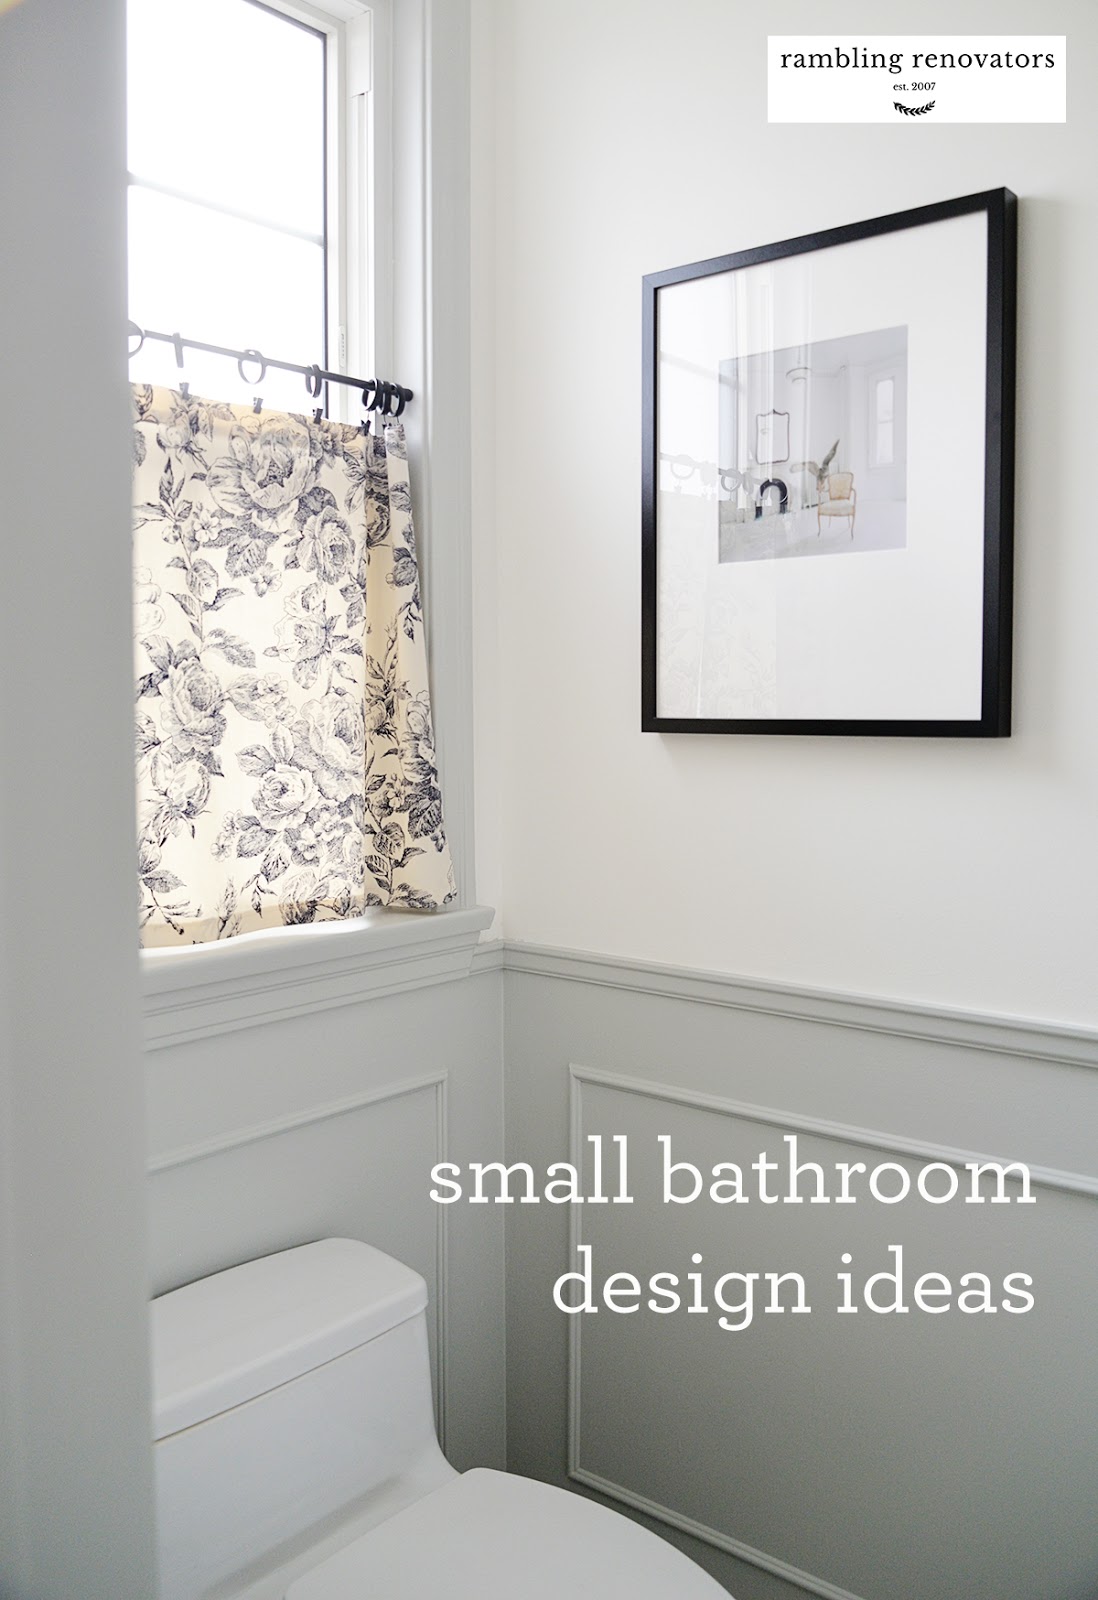 Small Bathroom Design Ideas Rambling Renovators